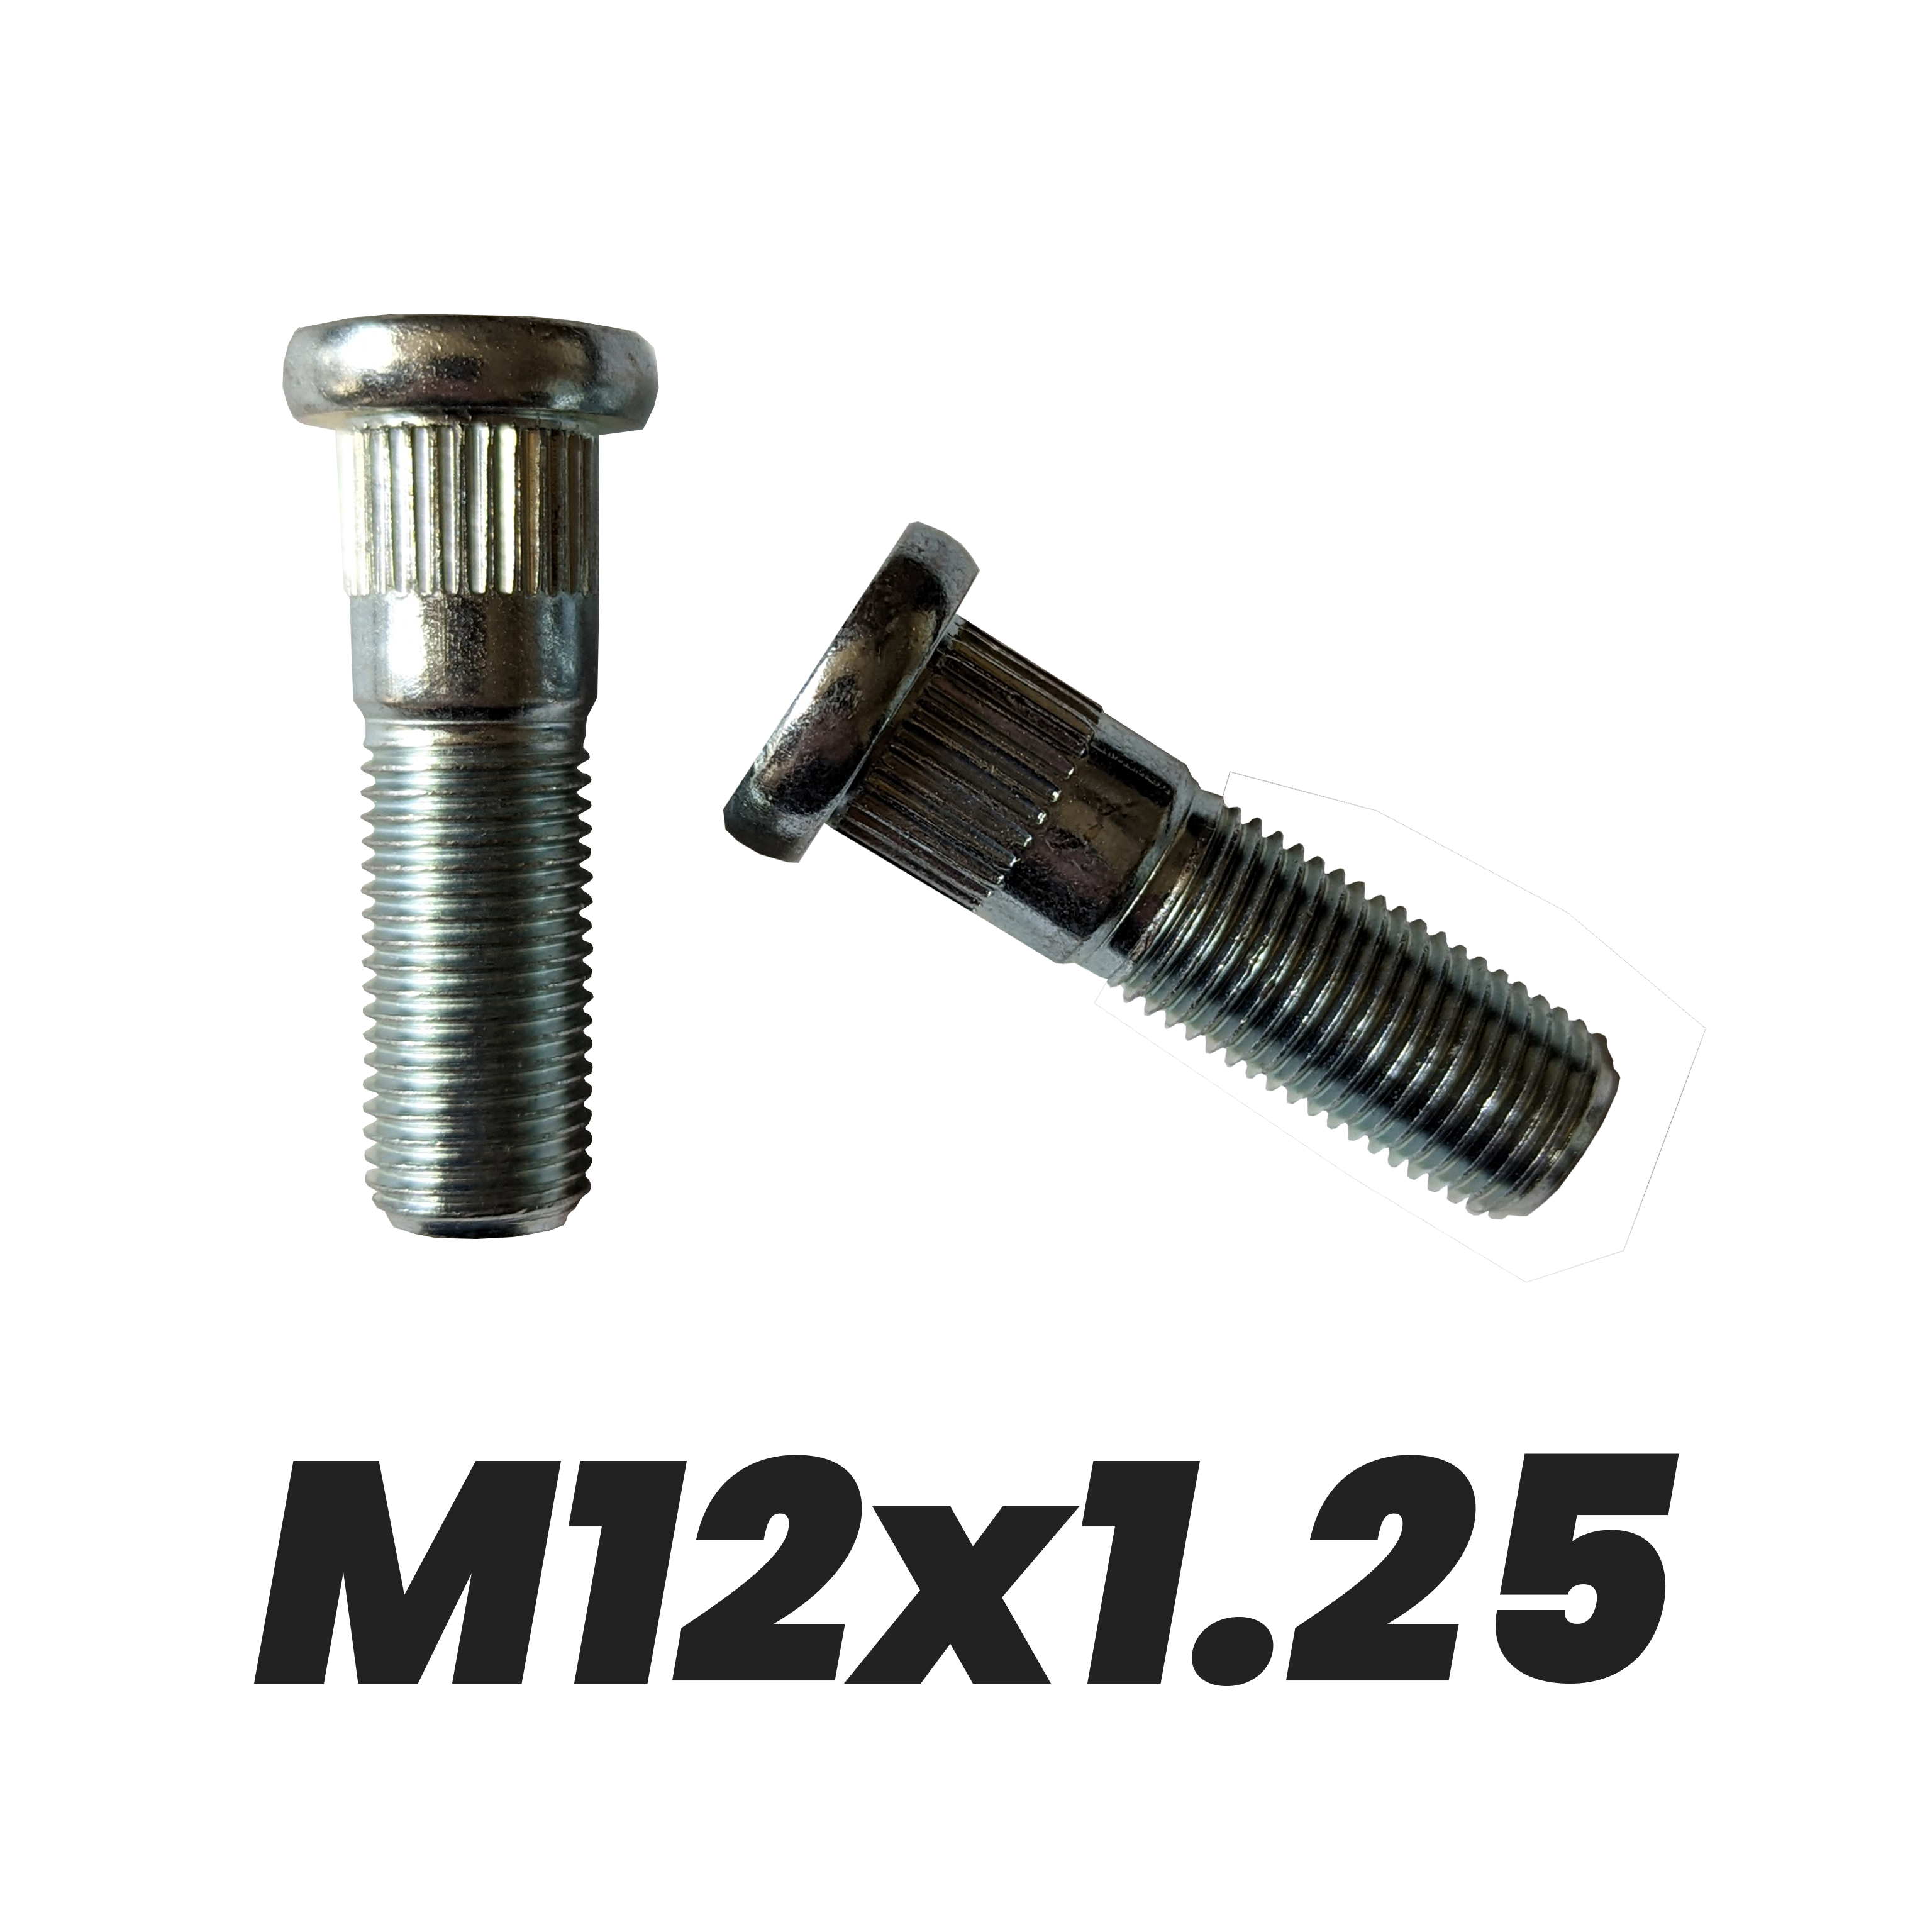 M12x1.25 Lug Studs